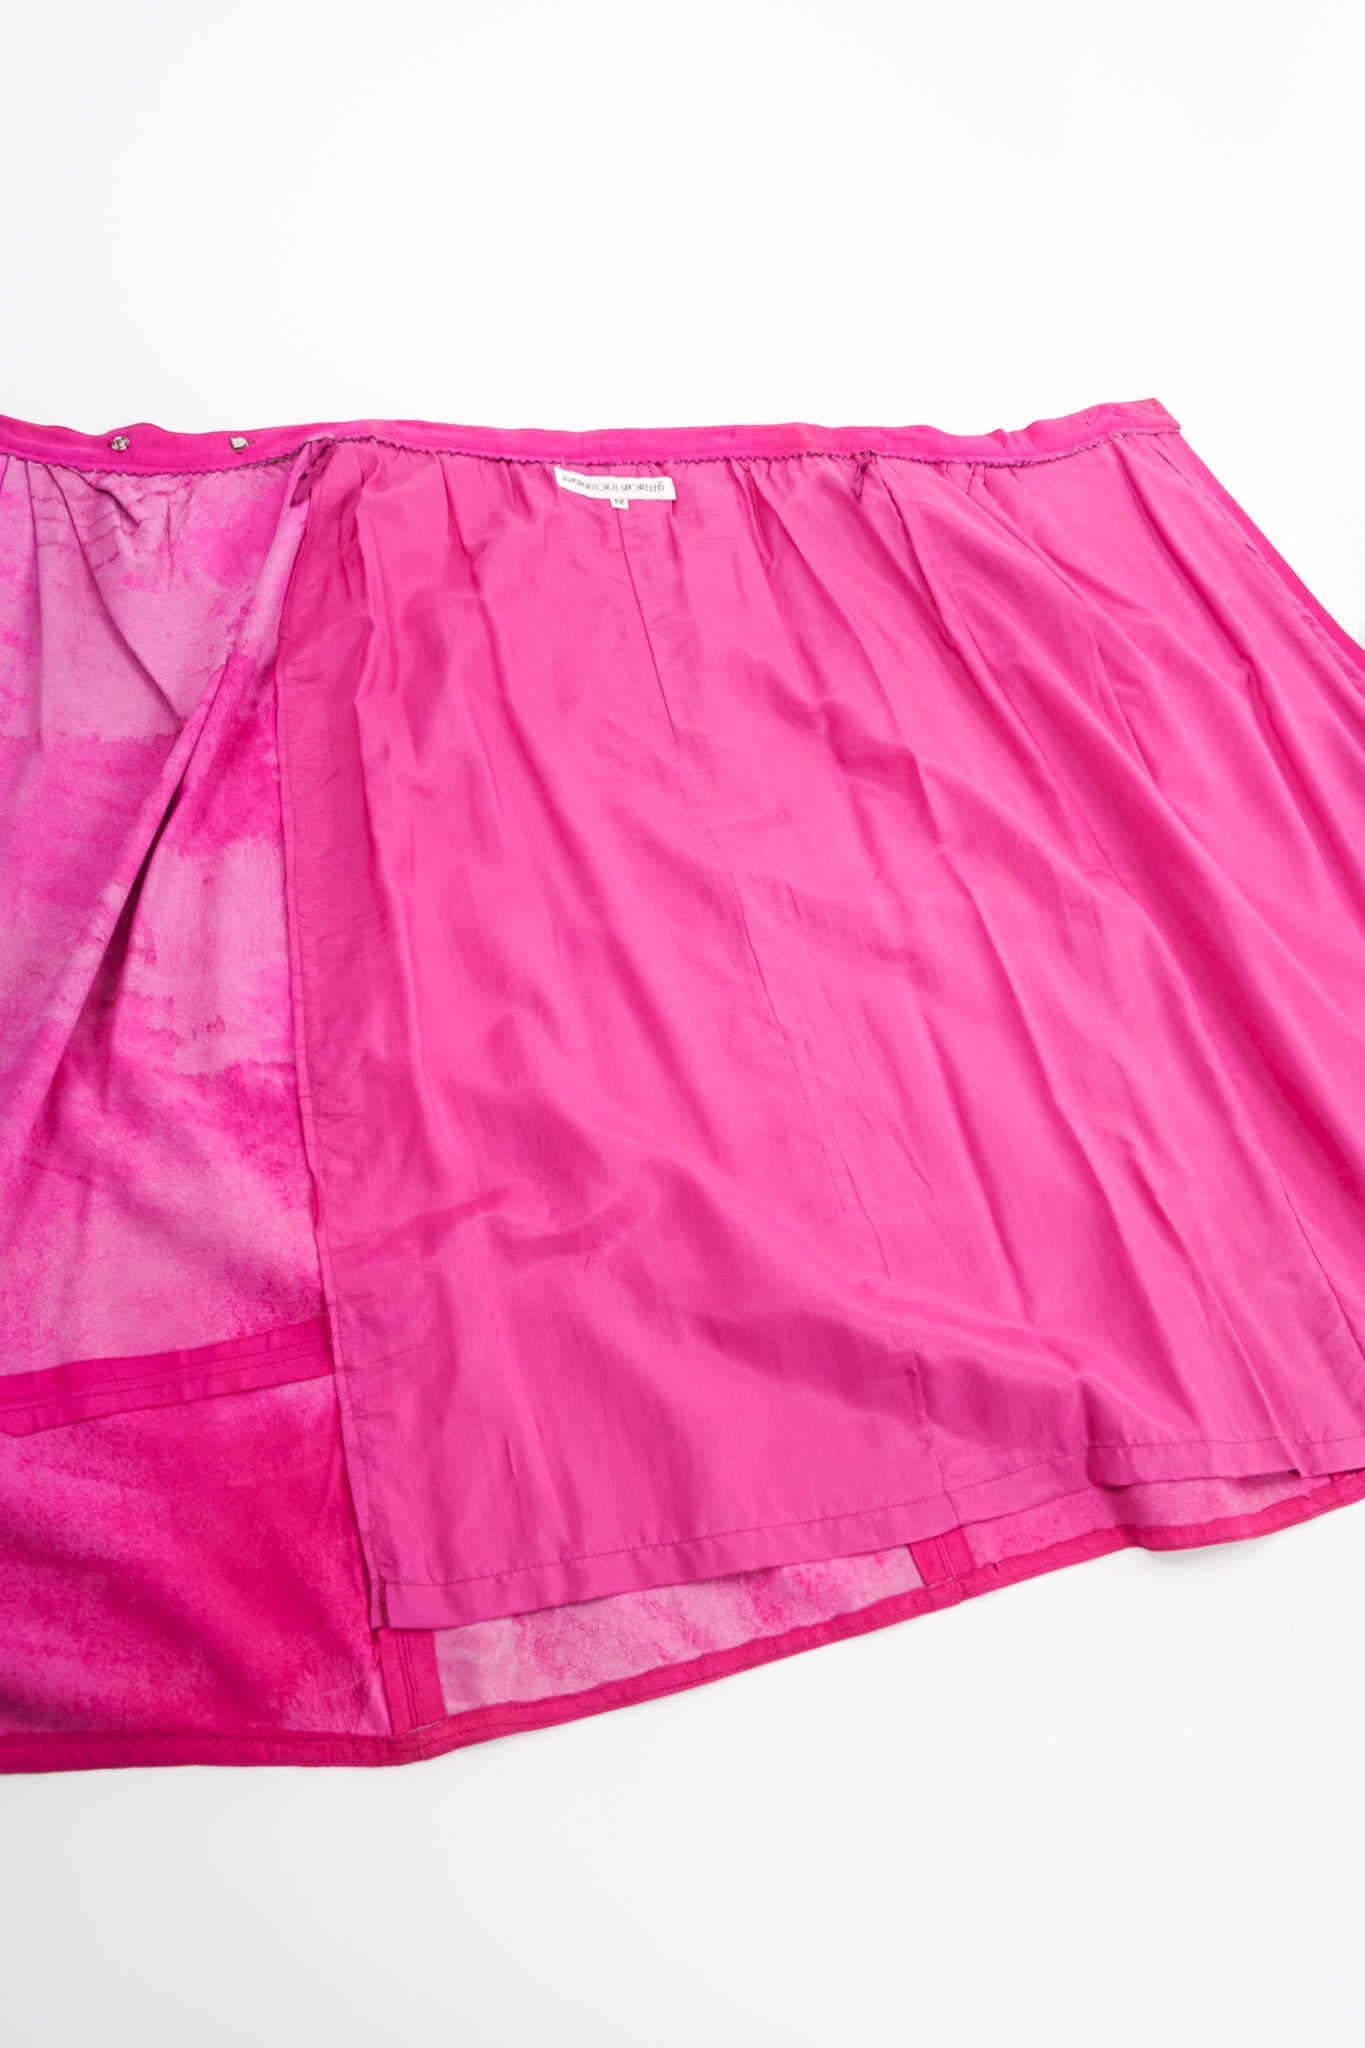 Vintage Kasper for JL Sport Hot Pink Tissue Suede Wrap Skirt flat at Recess LA